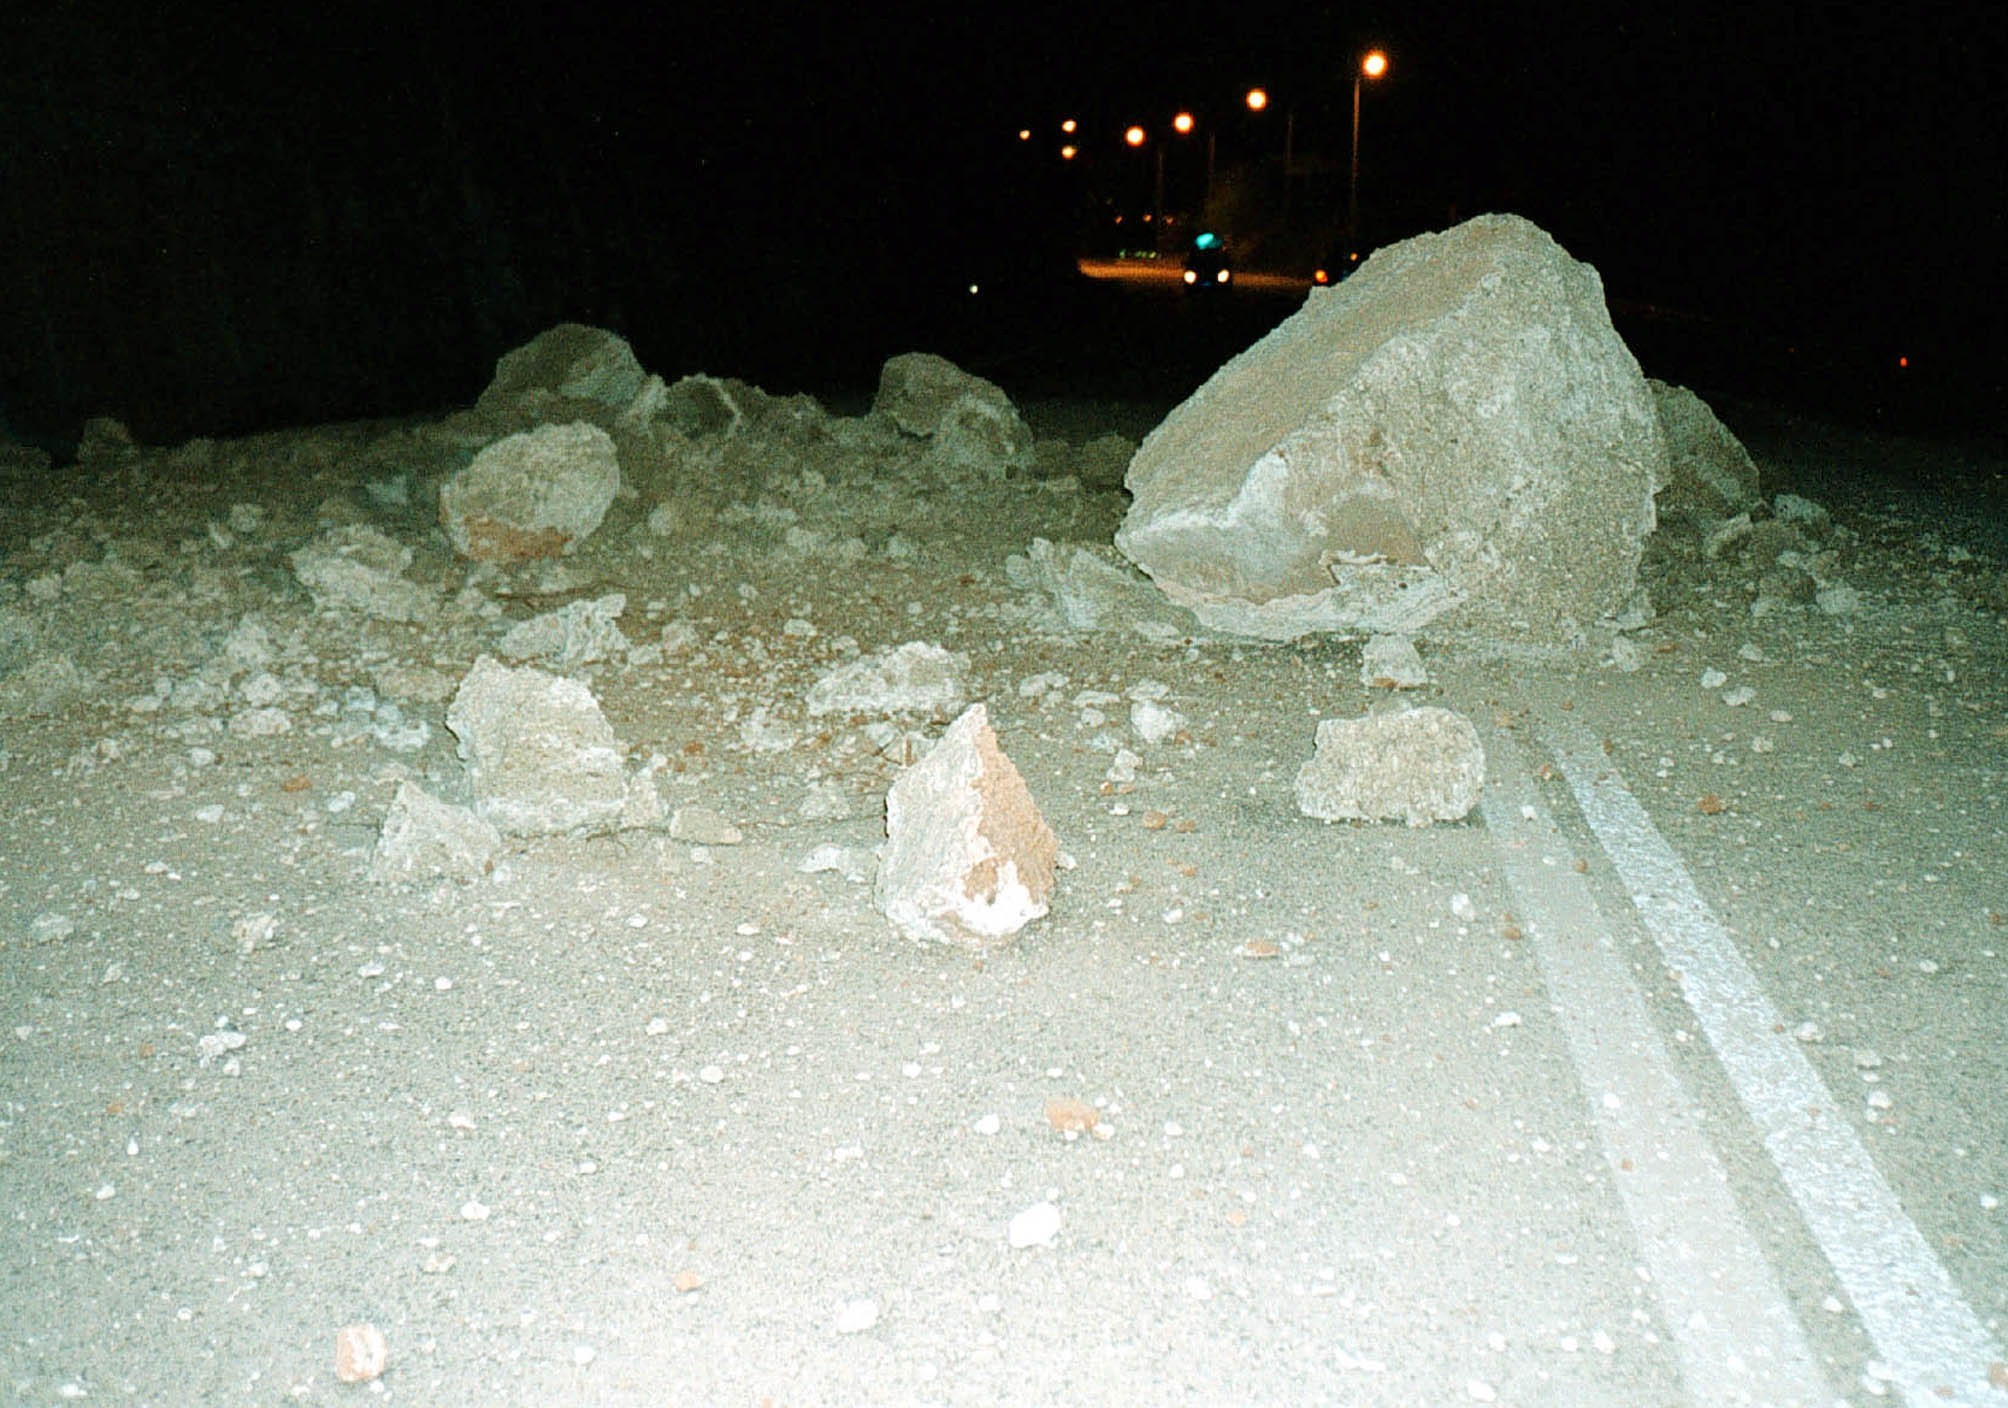 Χανιά: Βράχος 2 τόνων καταπλάκωσε το αυτοκίνητό τους – Σώθηκαν από θαύμα